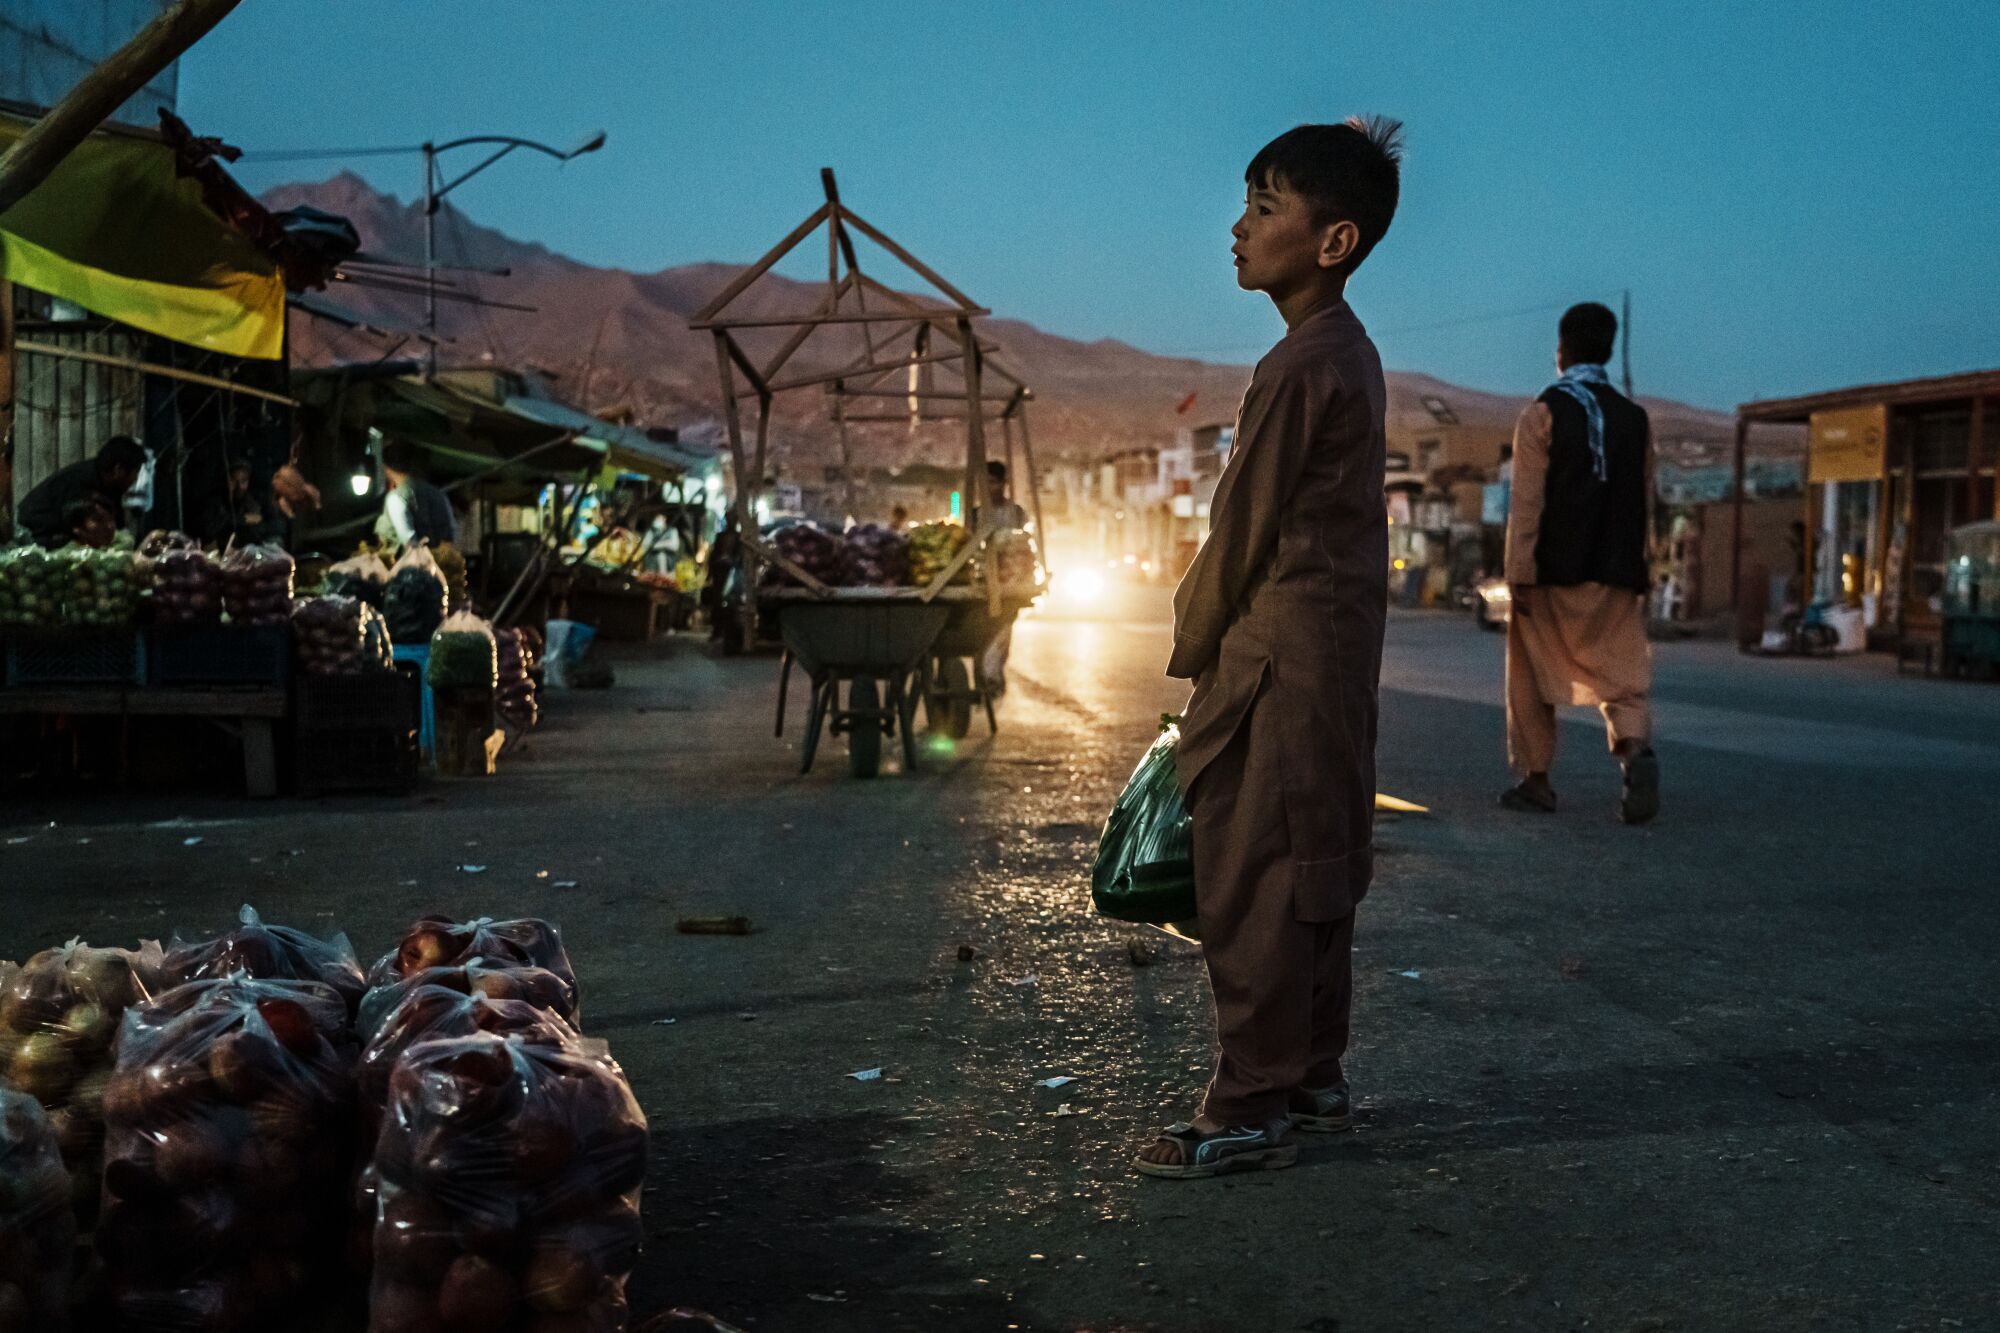   Afganlar akşamlarını ana caddede geçirirler.   